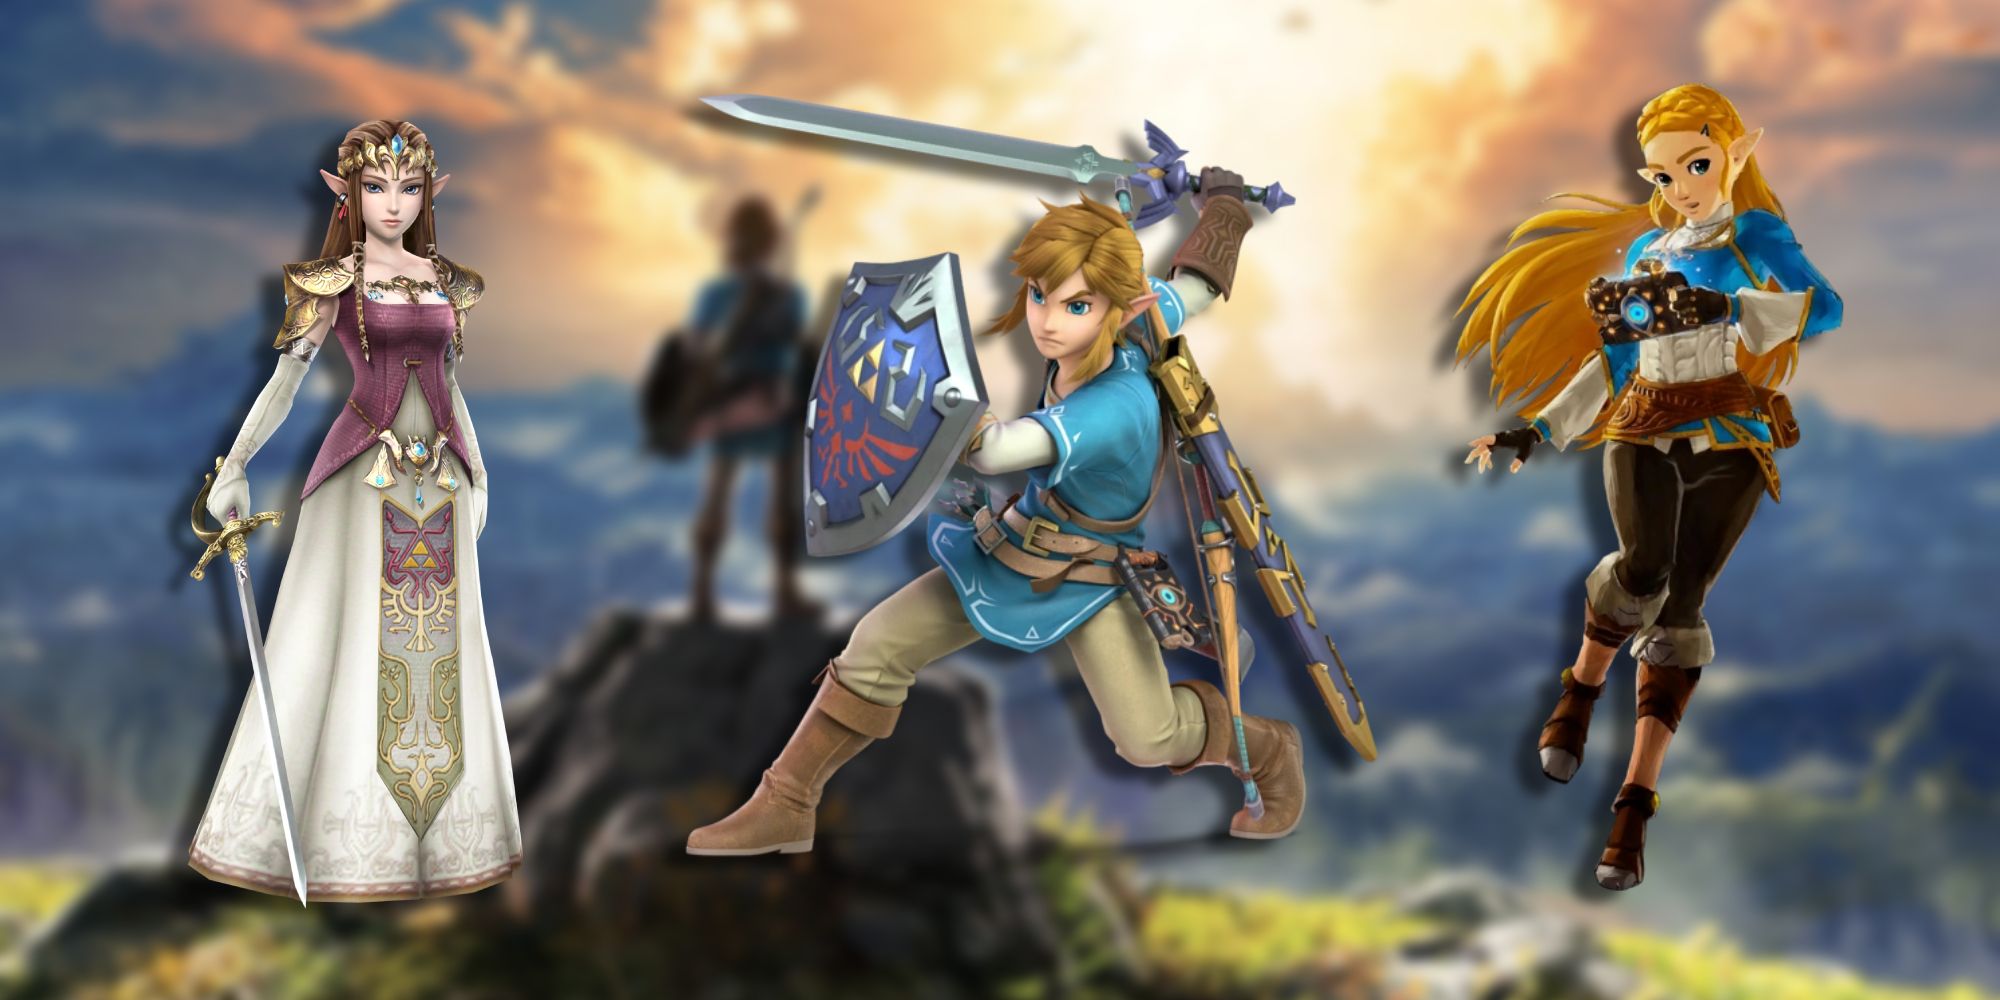 Link Prestige Legend of Zelda Nintendo Costume, Medium/7-8